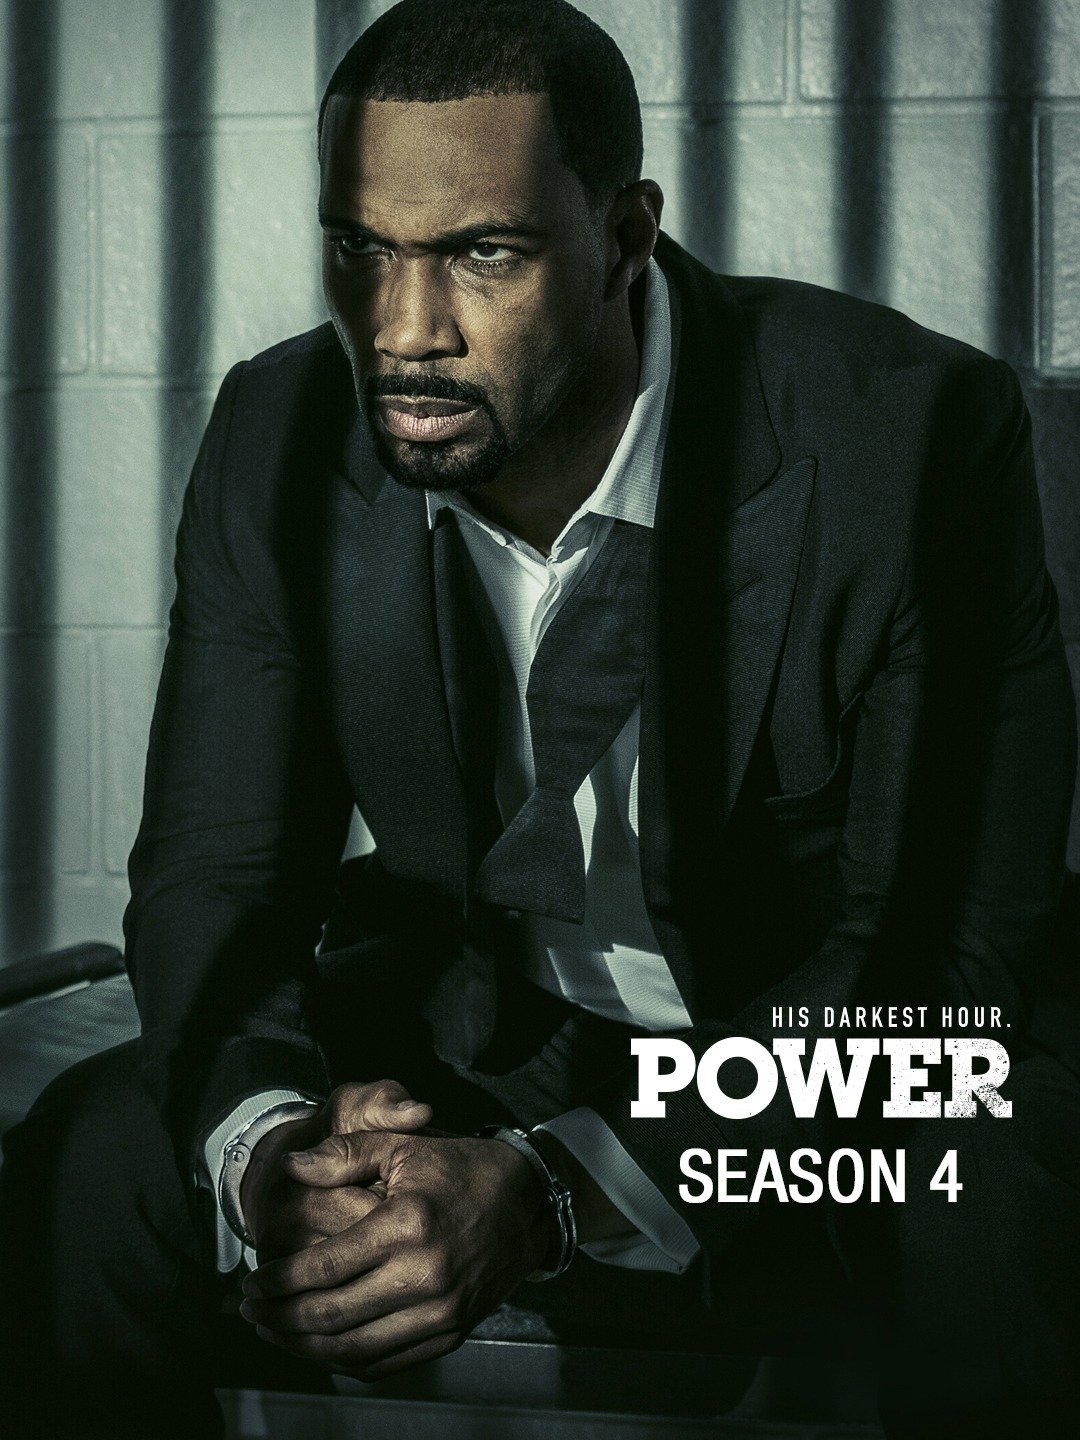 power season 2 finale review